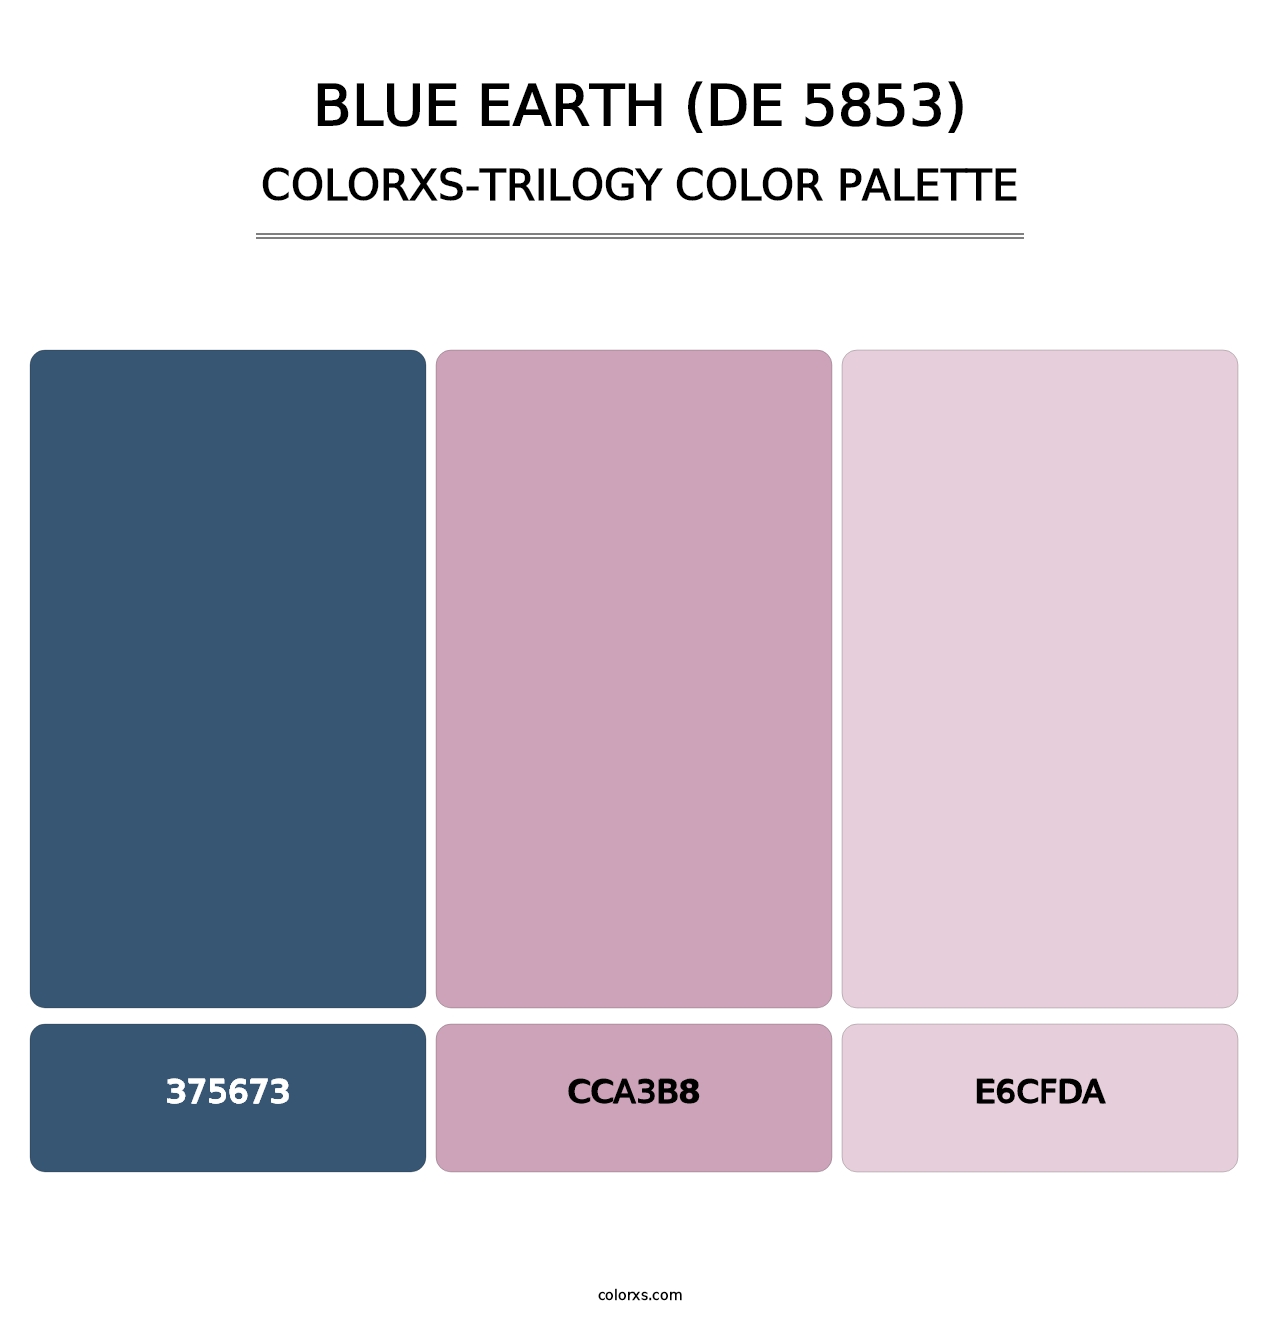 Blue Earth (DE 5853) - Colorxs Trilogy Palette